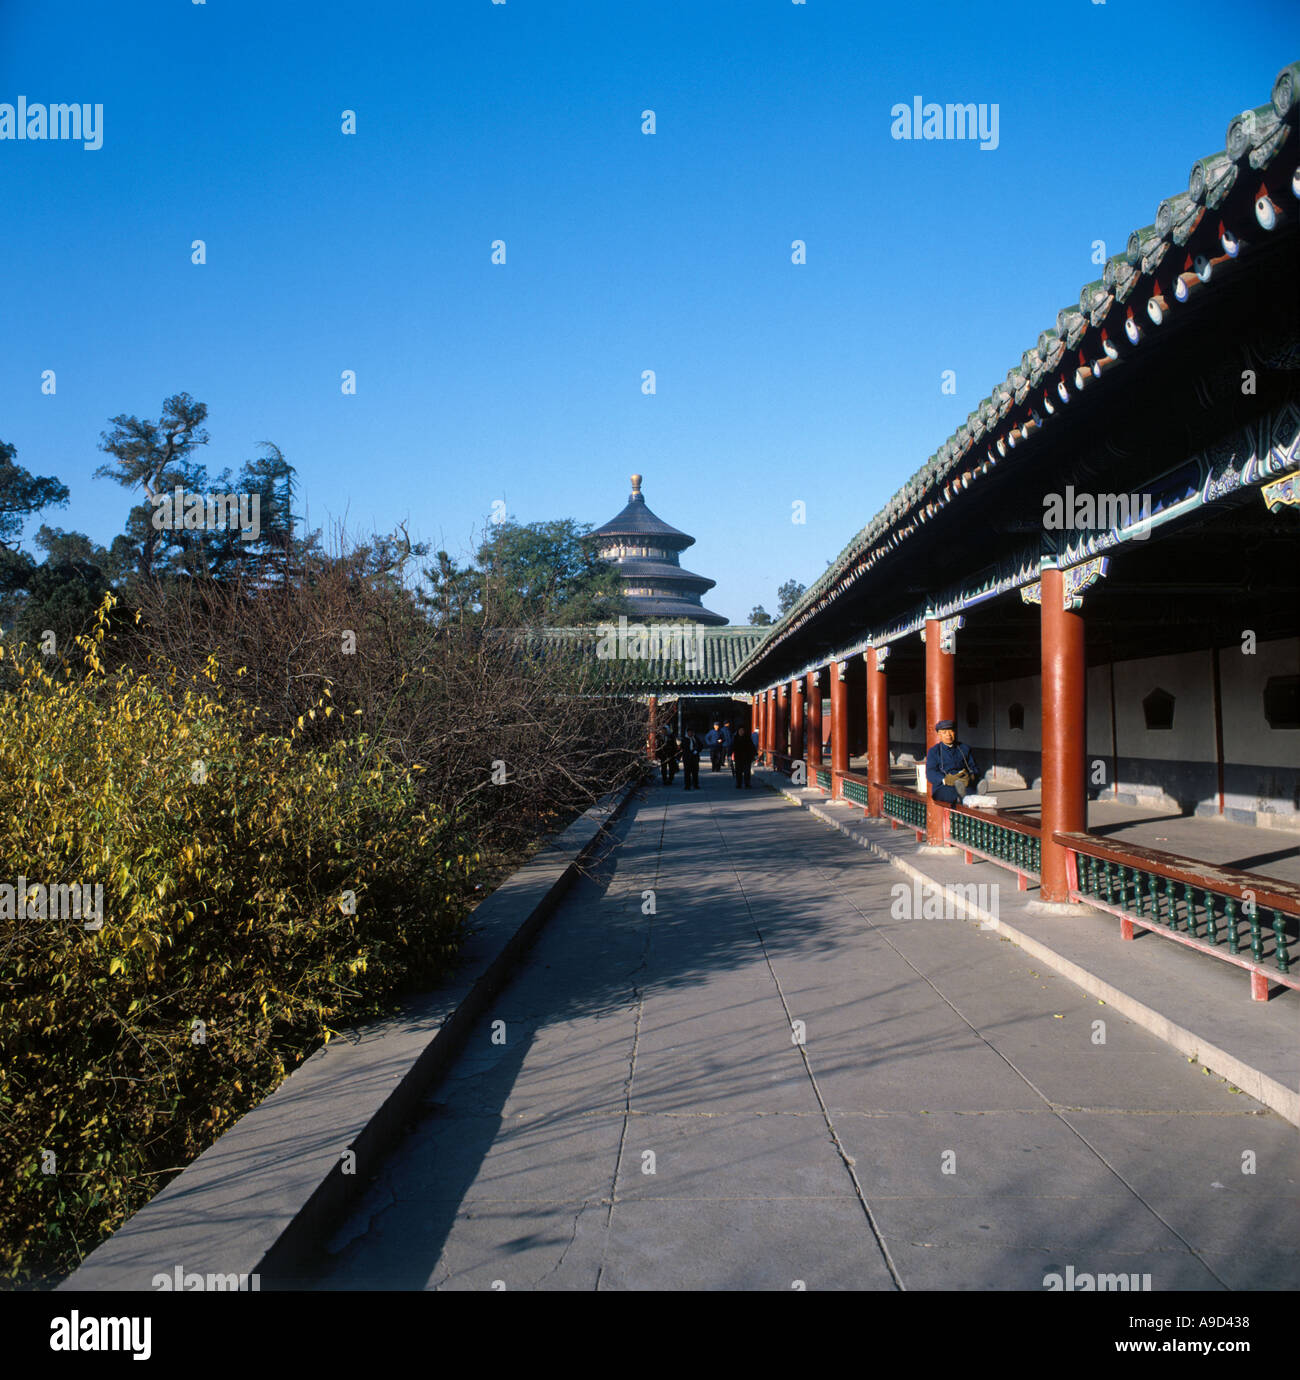 Motivi del Tempio del Paradiso, Pechino, Cina, prese nel 1987 prima del processo di riforma e di modernizzazione Foto Stock